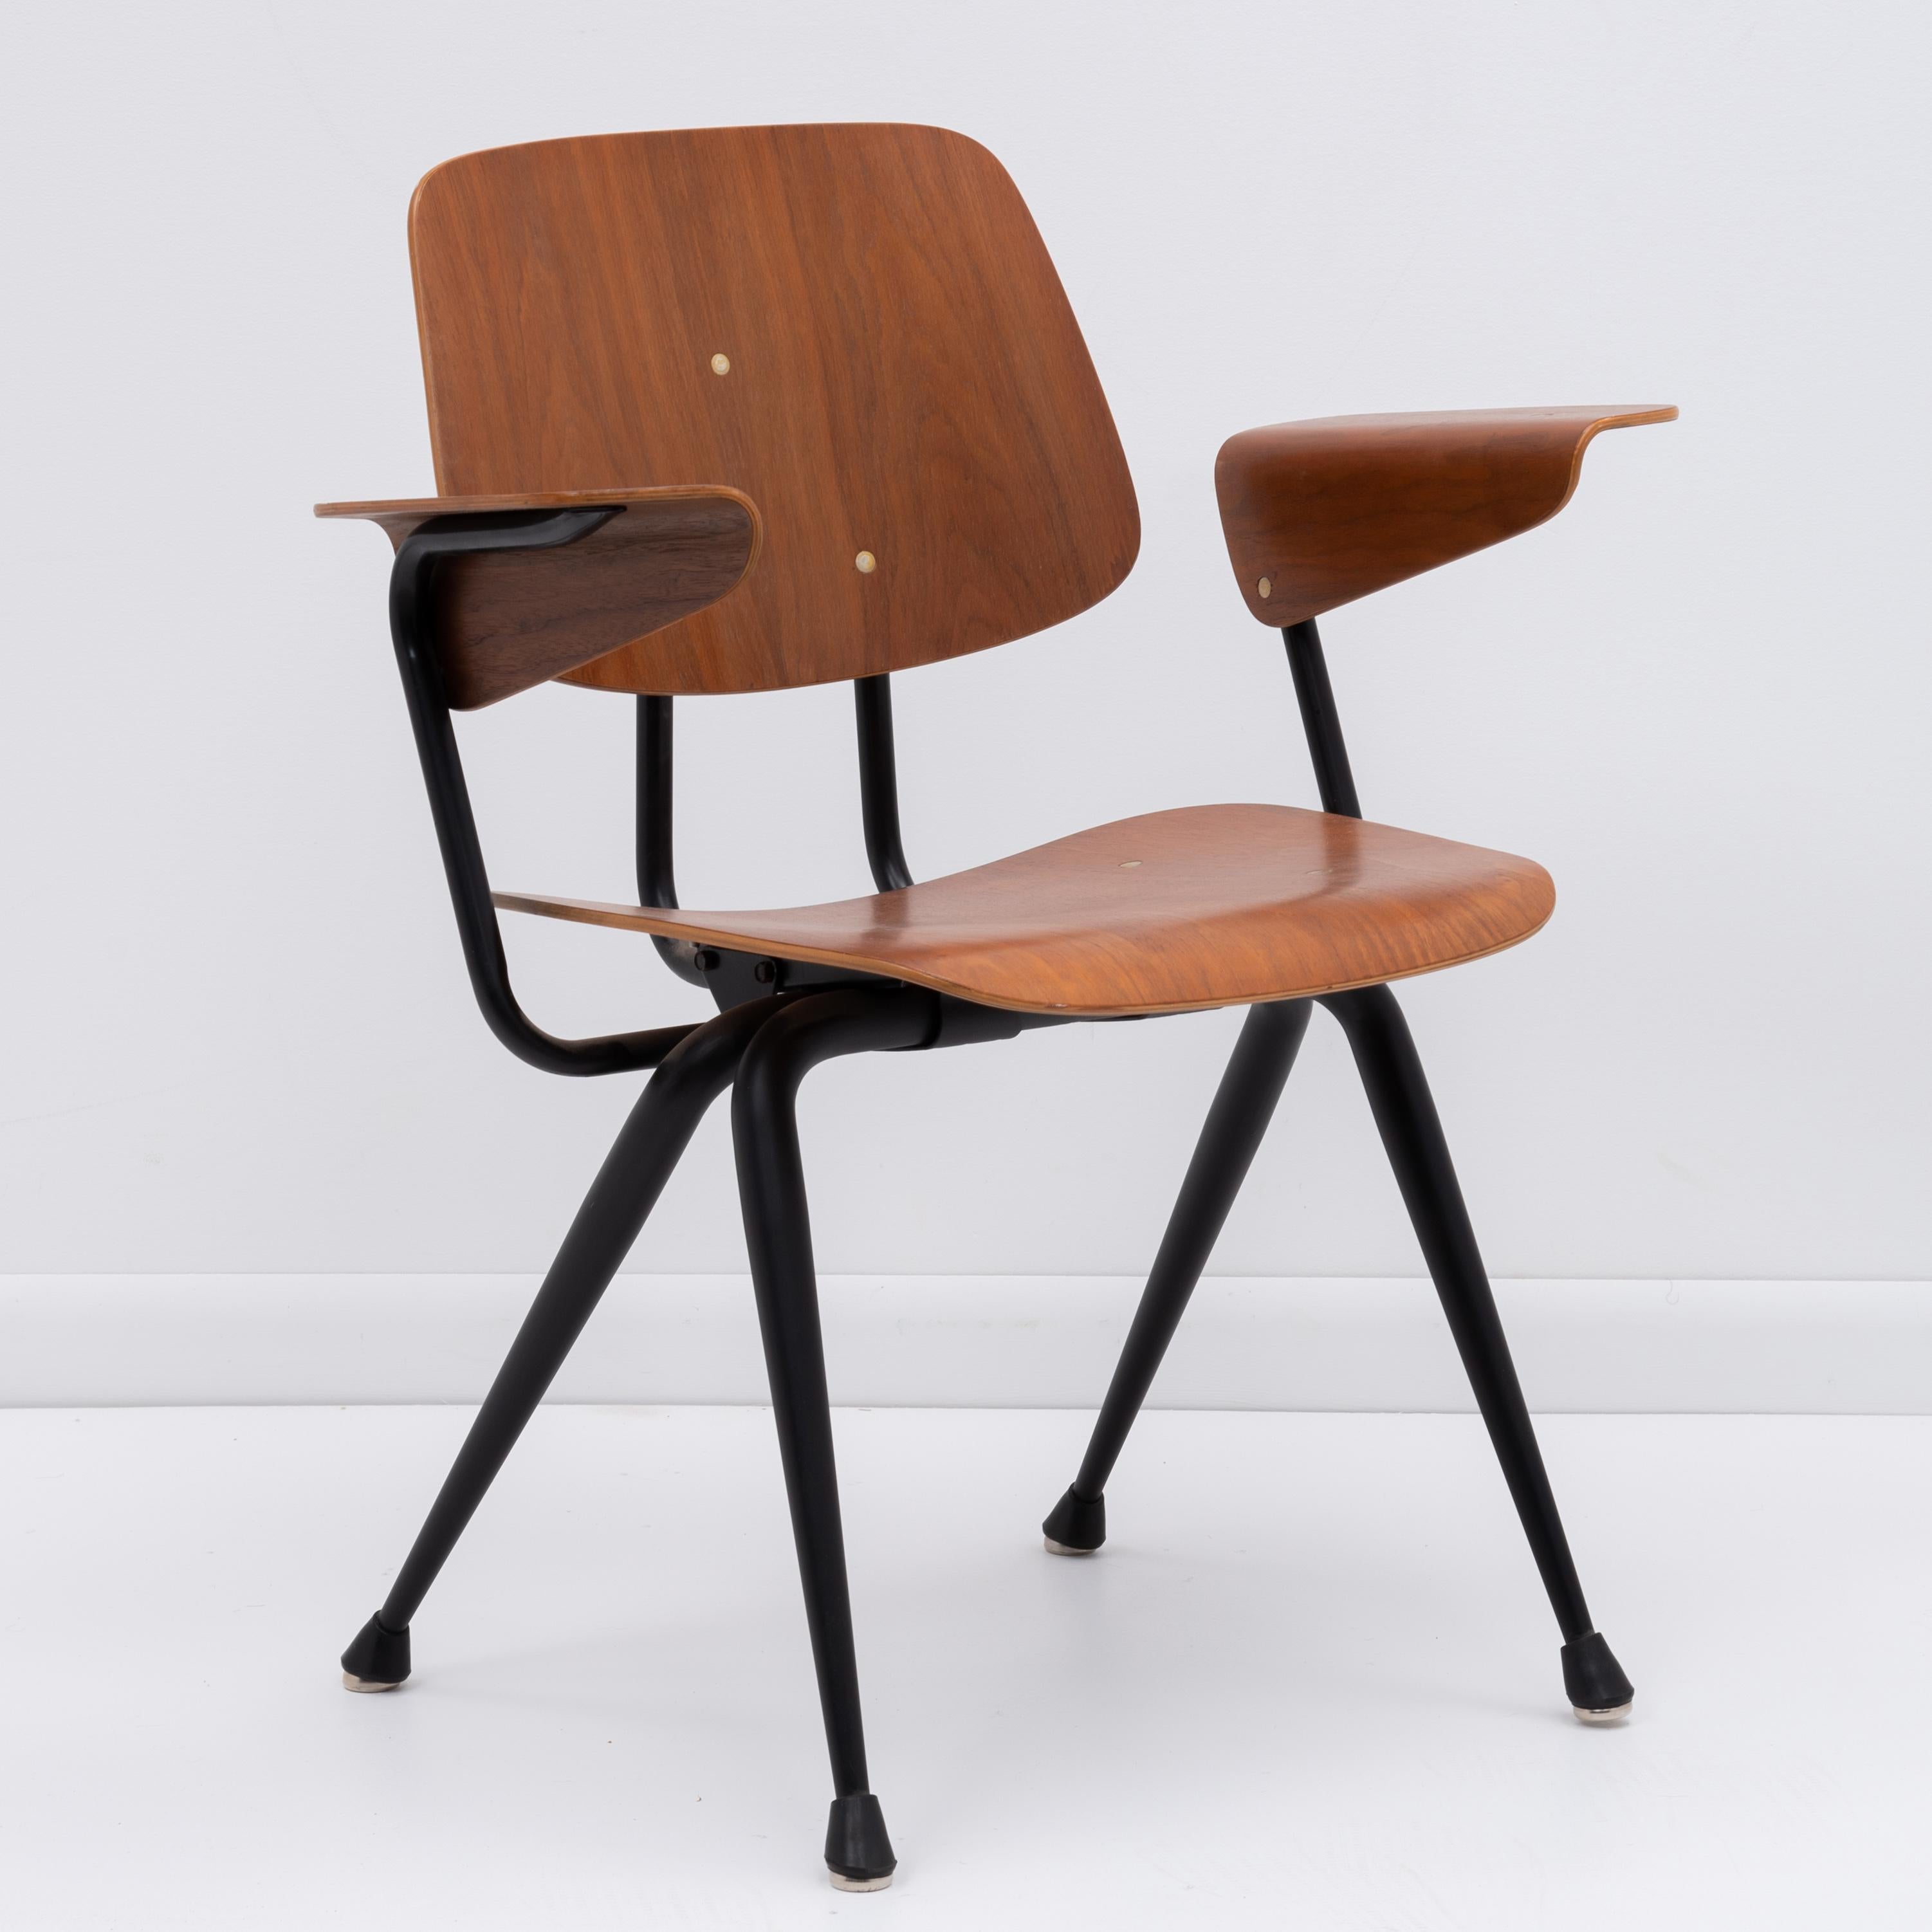 Ein wunderschönes Set aus vier Mid-Century-Sesseln aus Nussbaumholz von Brunswick, die nach den ikonischen Entwürfen von Charles und Ray Eames und dem französischen Designer Jean Prouvé gestaltet sind. 

Obwohl Brunswick für Schul- und